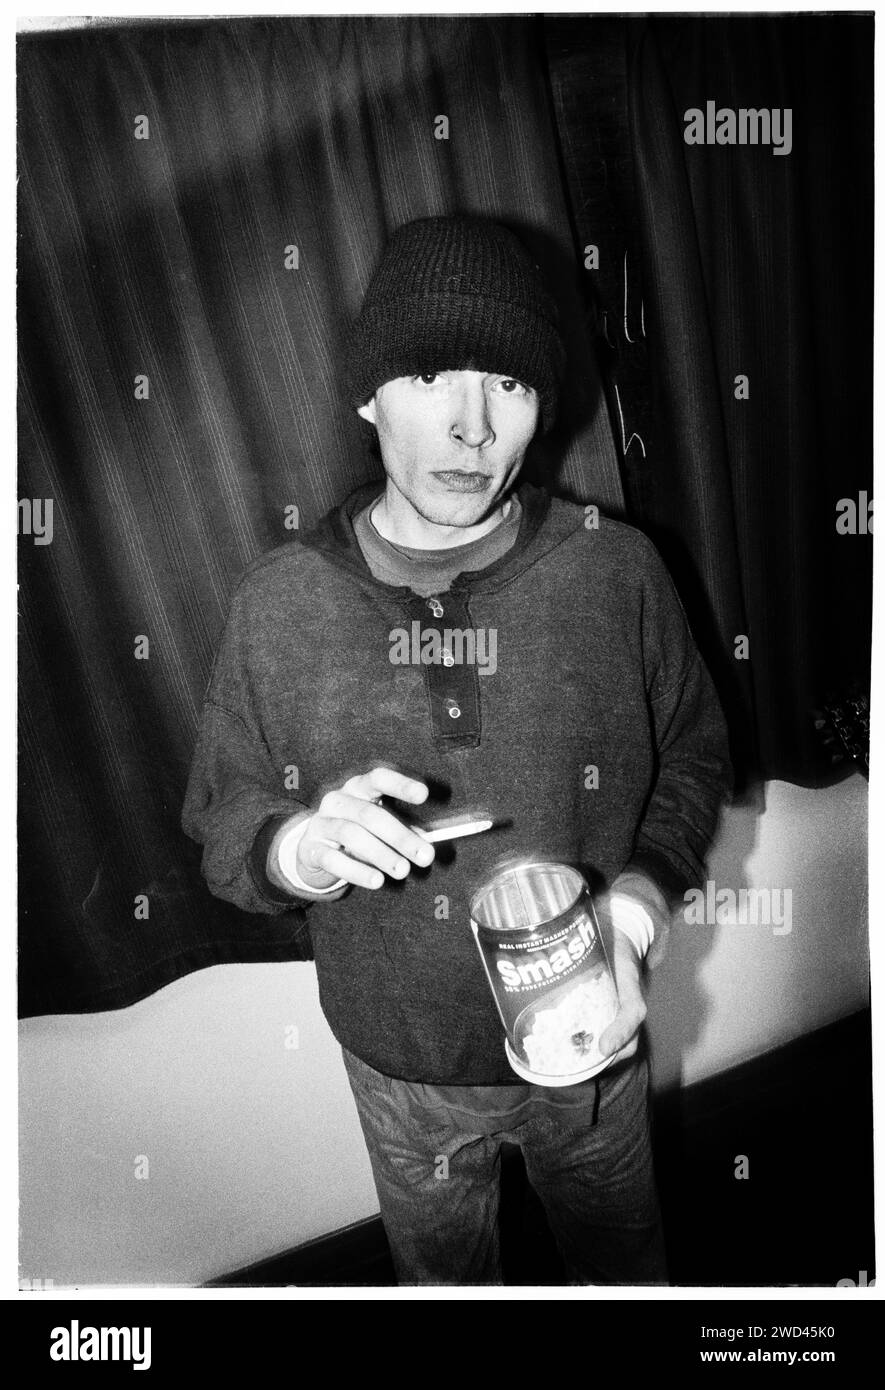 Ed Borrie della band punk S*M*A*S*H (SMASH) ha fotografato il backstage a Newport TJs, Galles, Regno Unito il 13 ottobre 1994. Foto: Rob Watkins. INFO: SMASH, una band punk britannica degli anni '90, ha abbracciato l'etica del fai da te. Il loro suono energetico, alimentato da testi politicamente carichi, trovò un seguito. Inni come "i Want to Kill Somebody" e "Shame" hanno catturato lo spirito ribelle della scena punk durante i loro anni di attività. Foto Stock